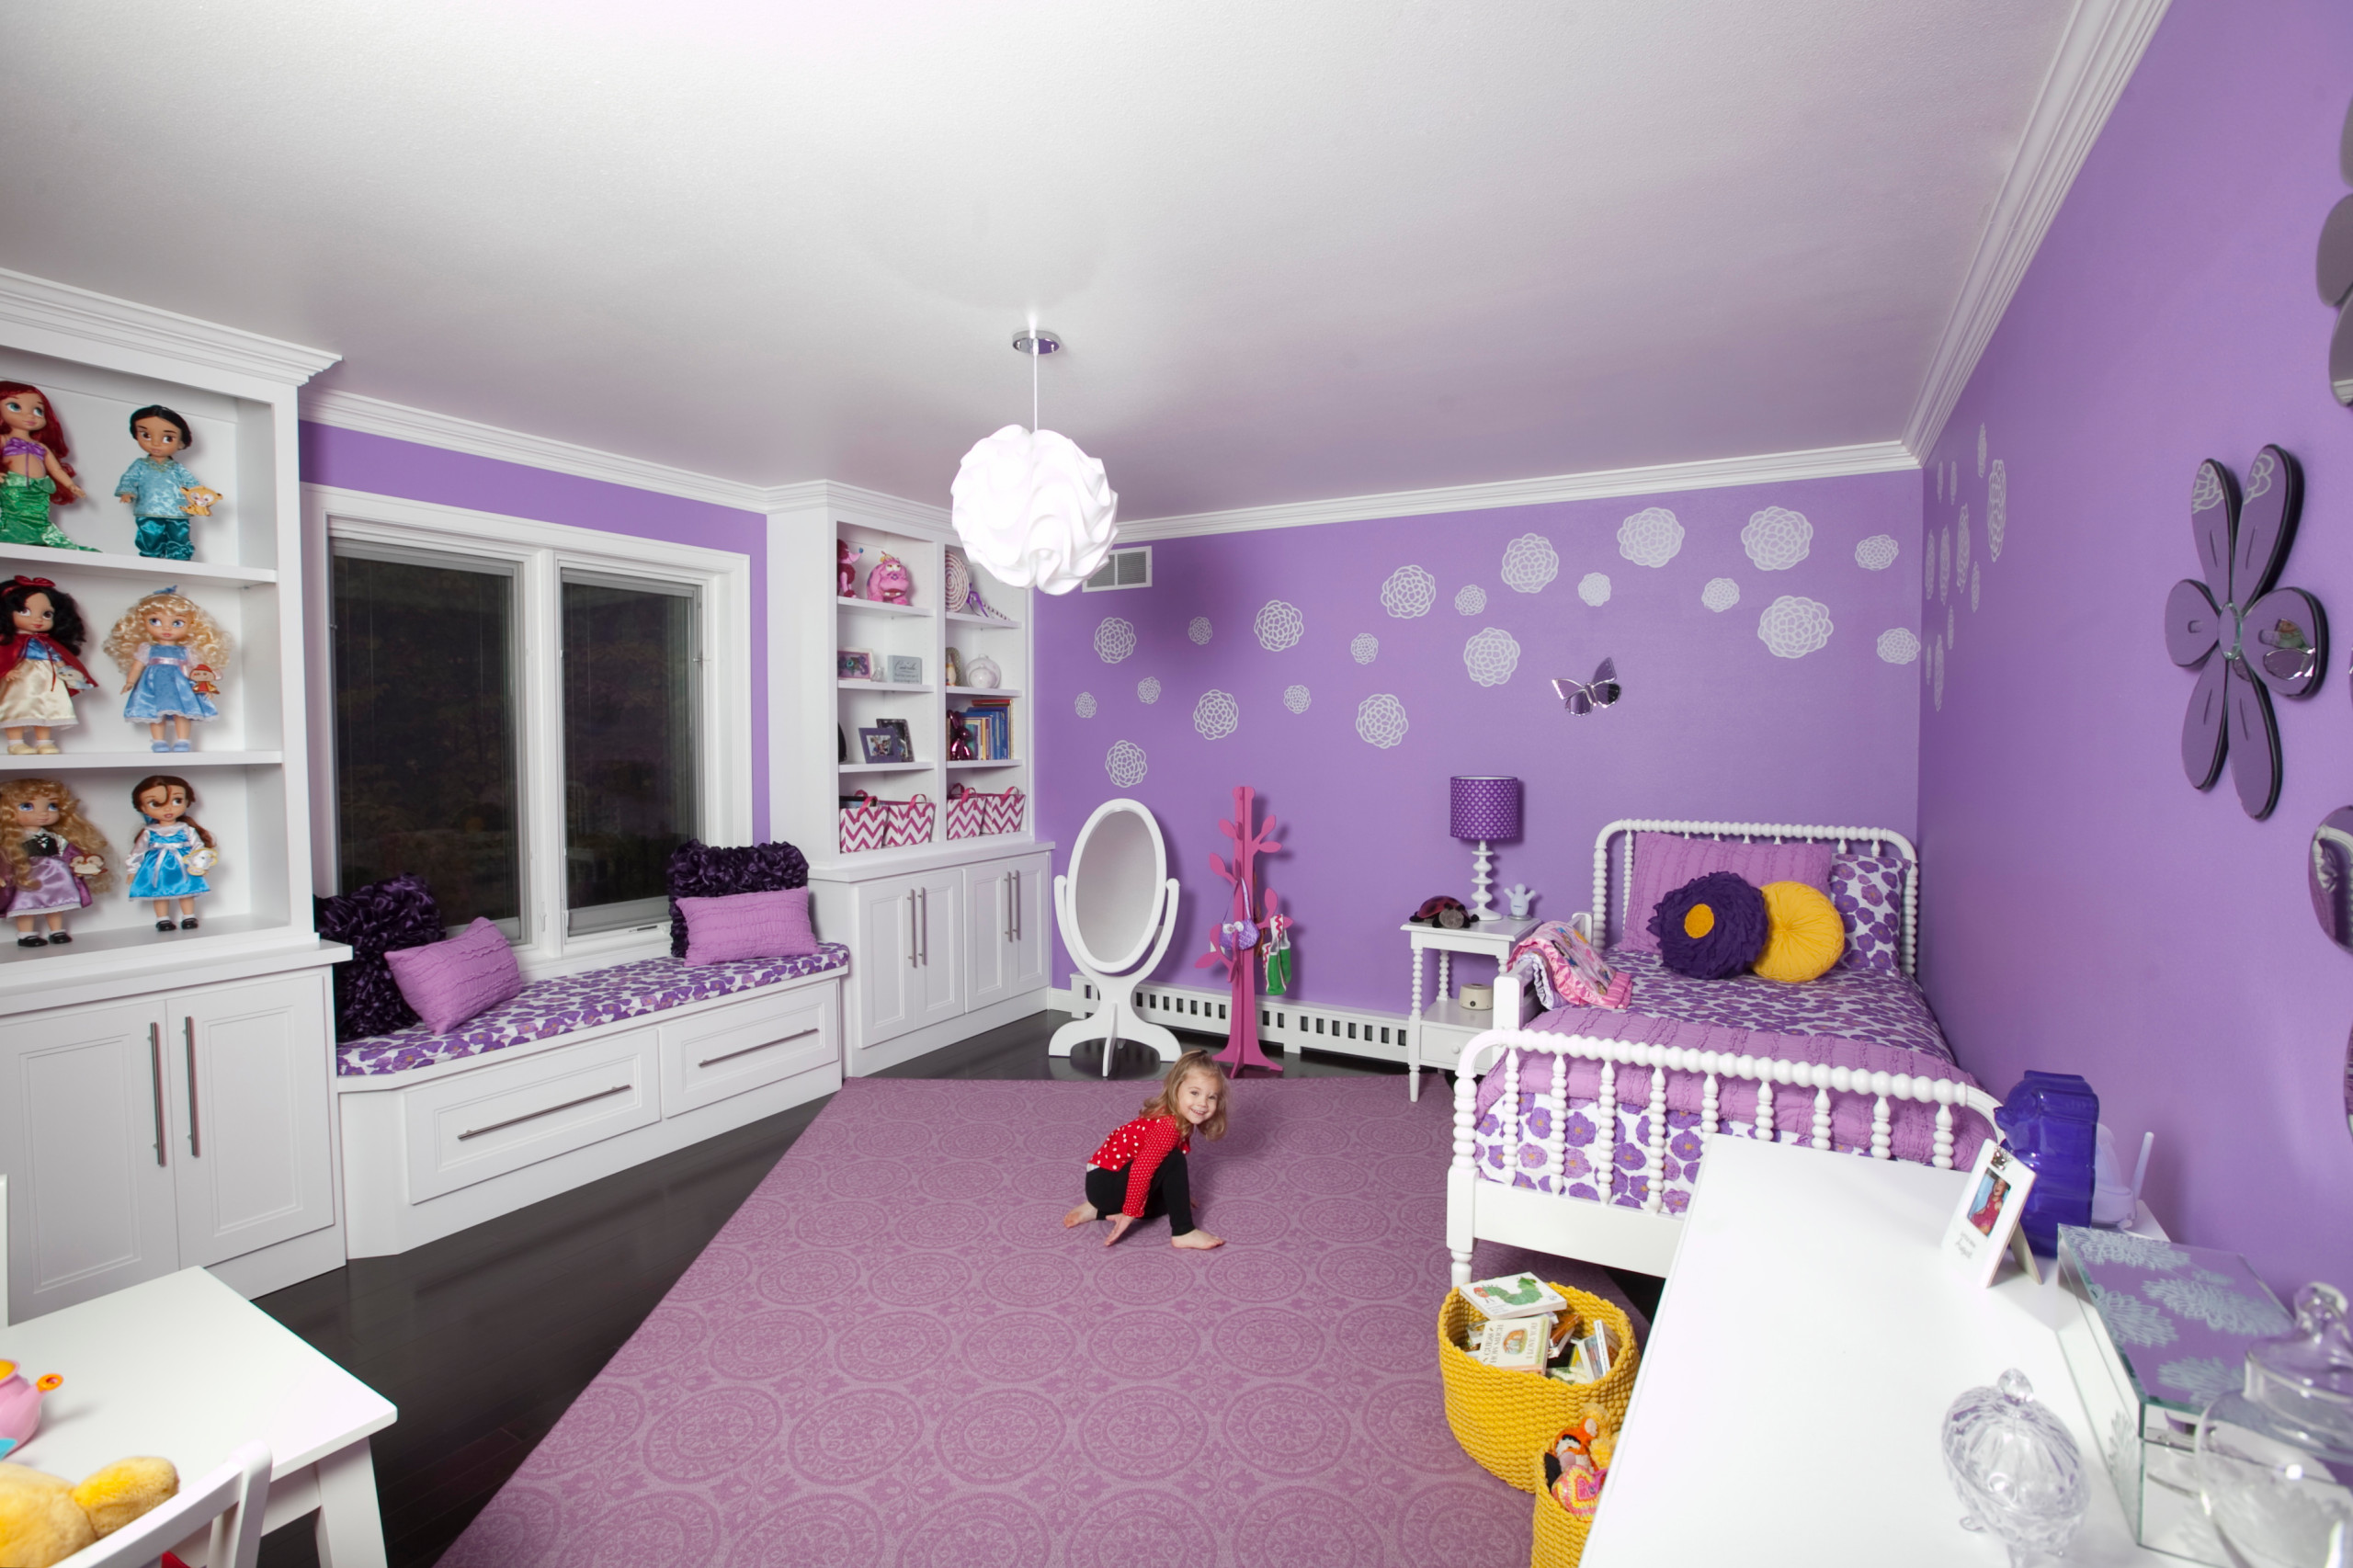 おしゃれな子供部屋 紫の壁 のインテリア画像 21年9月 Houzz ハウズ